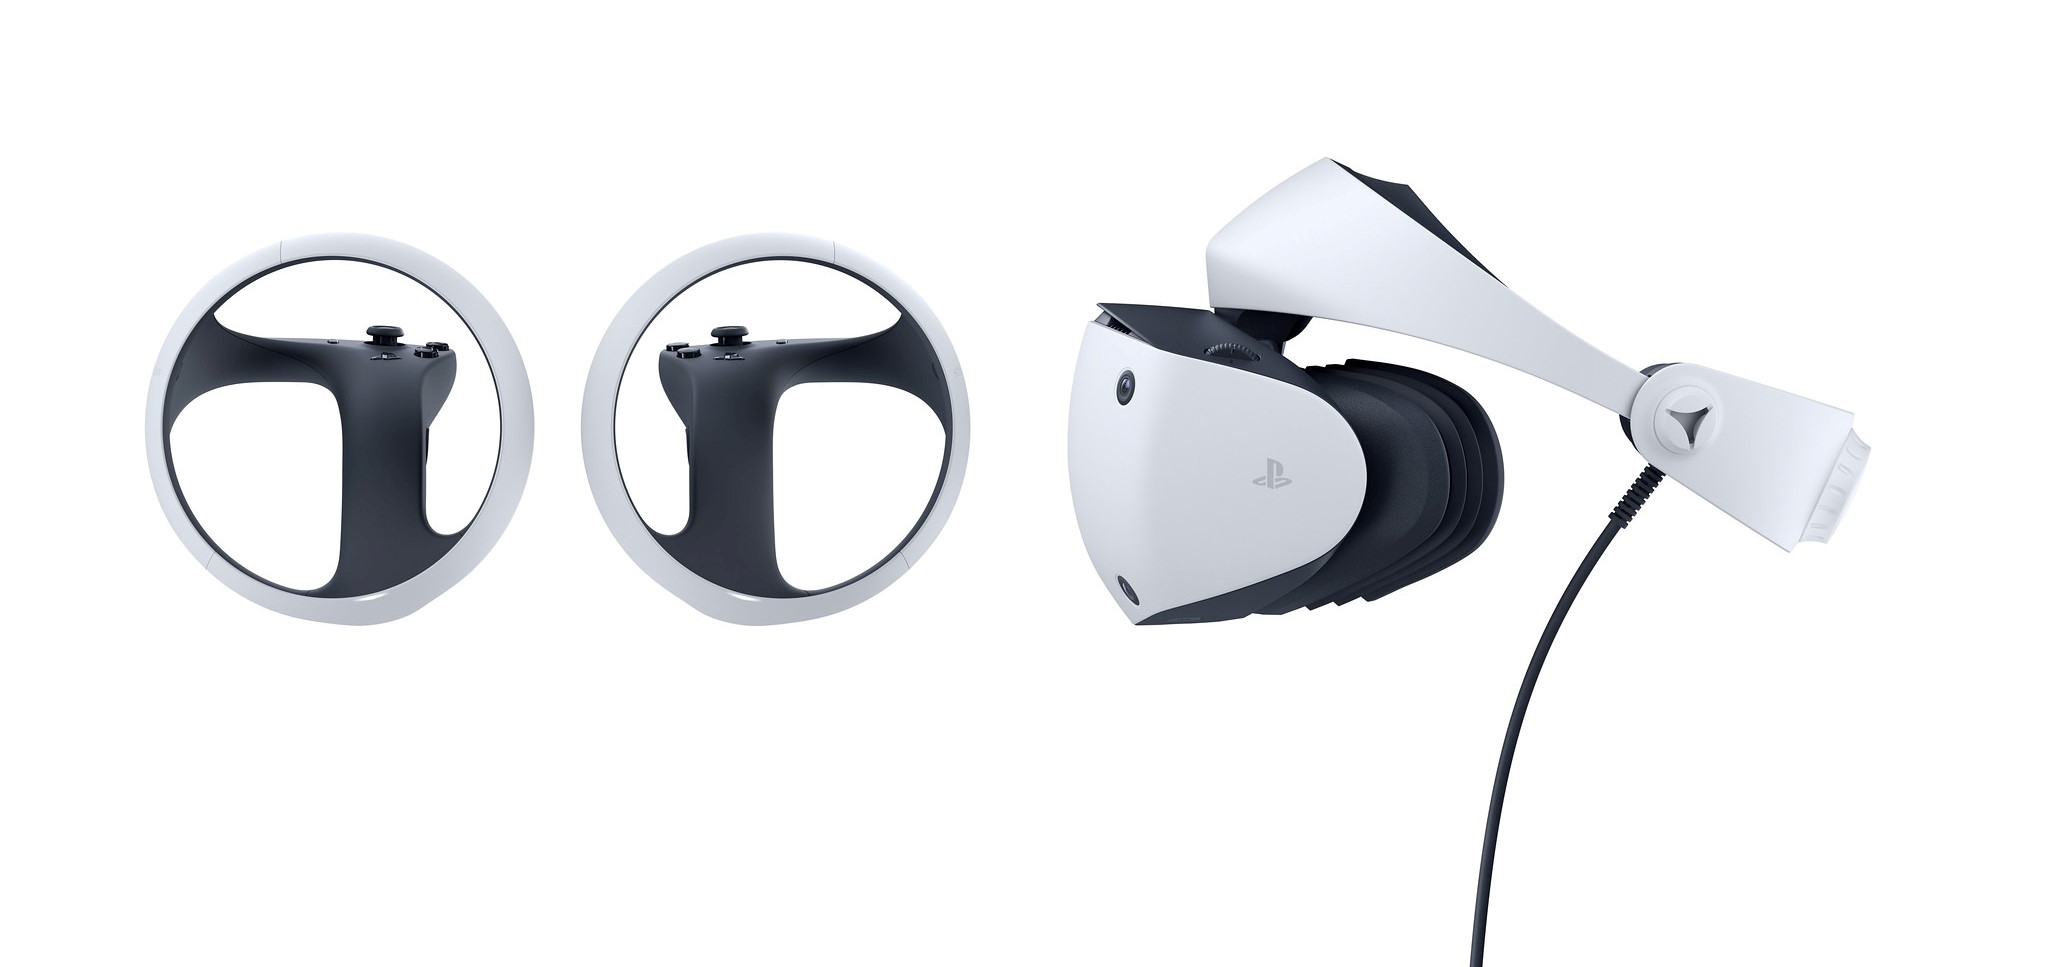 Le design de la PlayStation VR2 révélé : premier aperçu, spécifications et plus